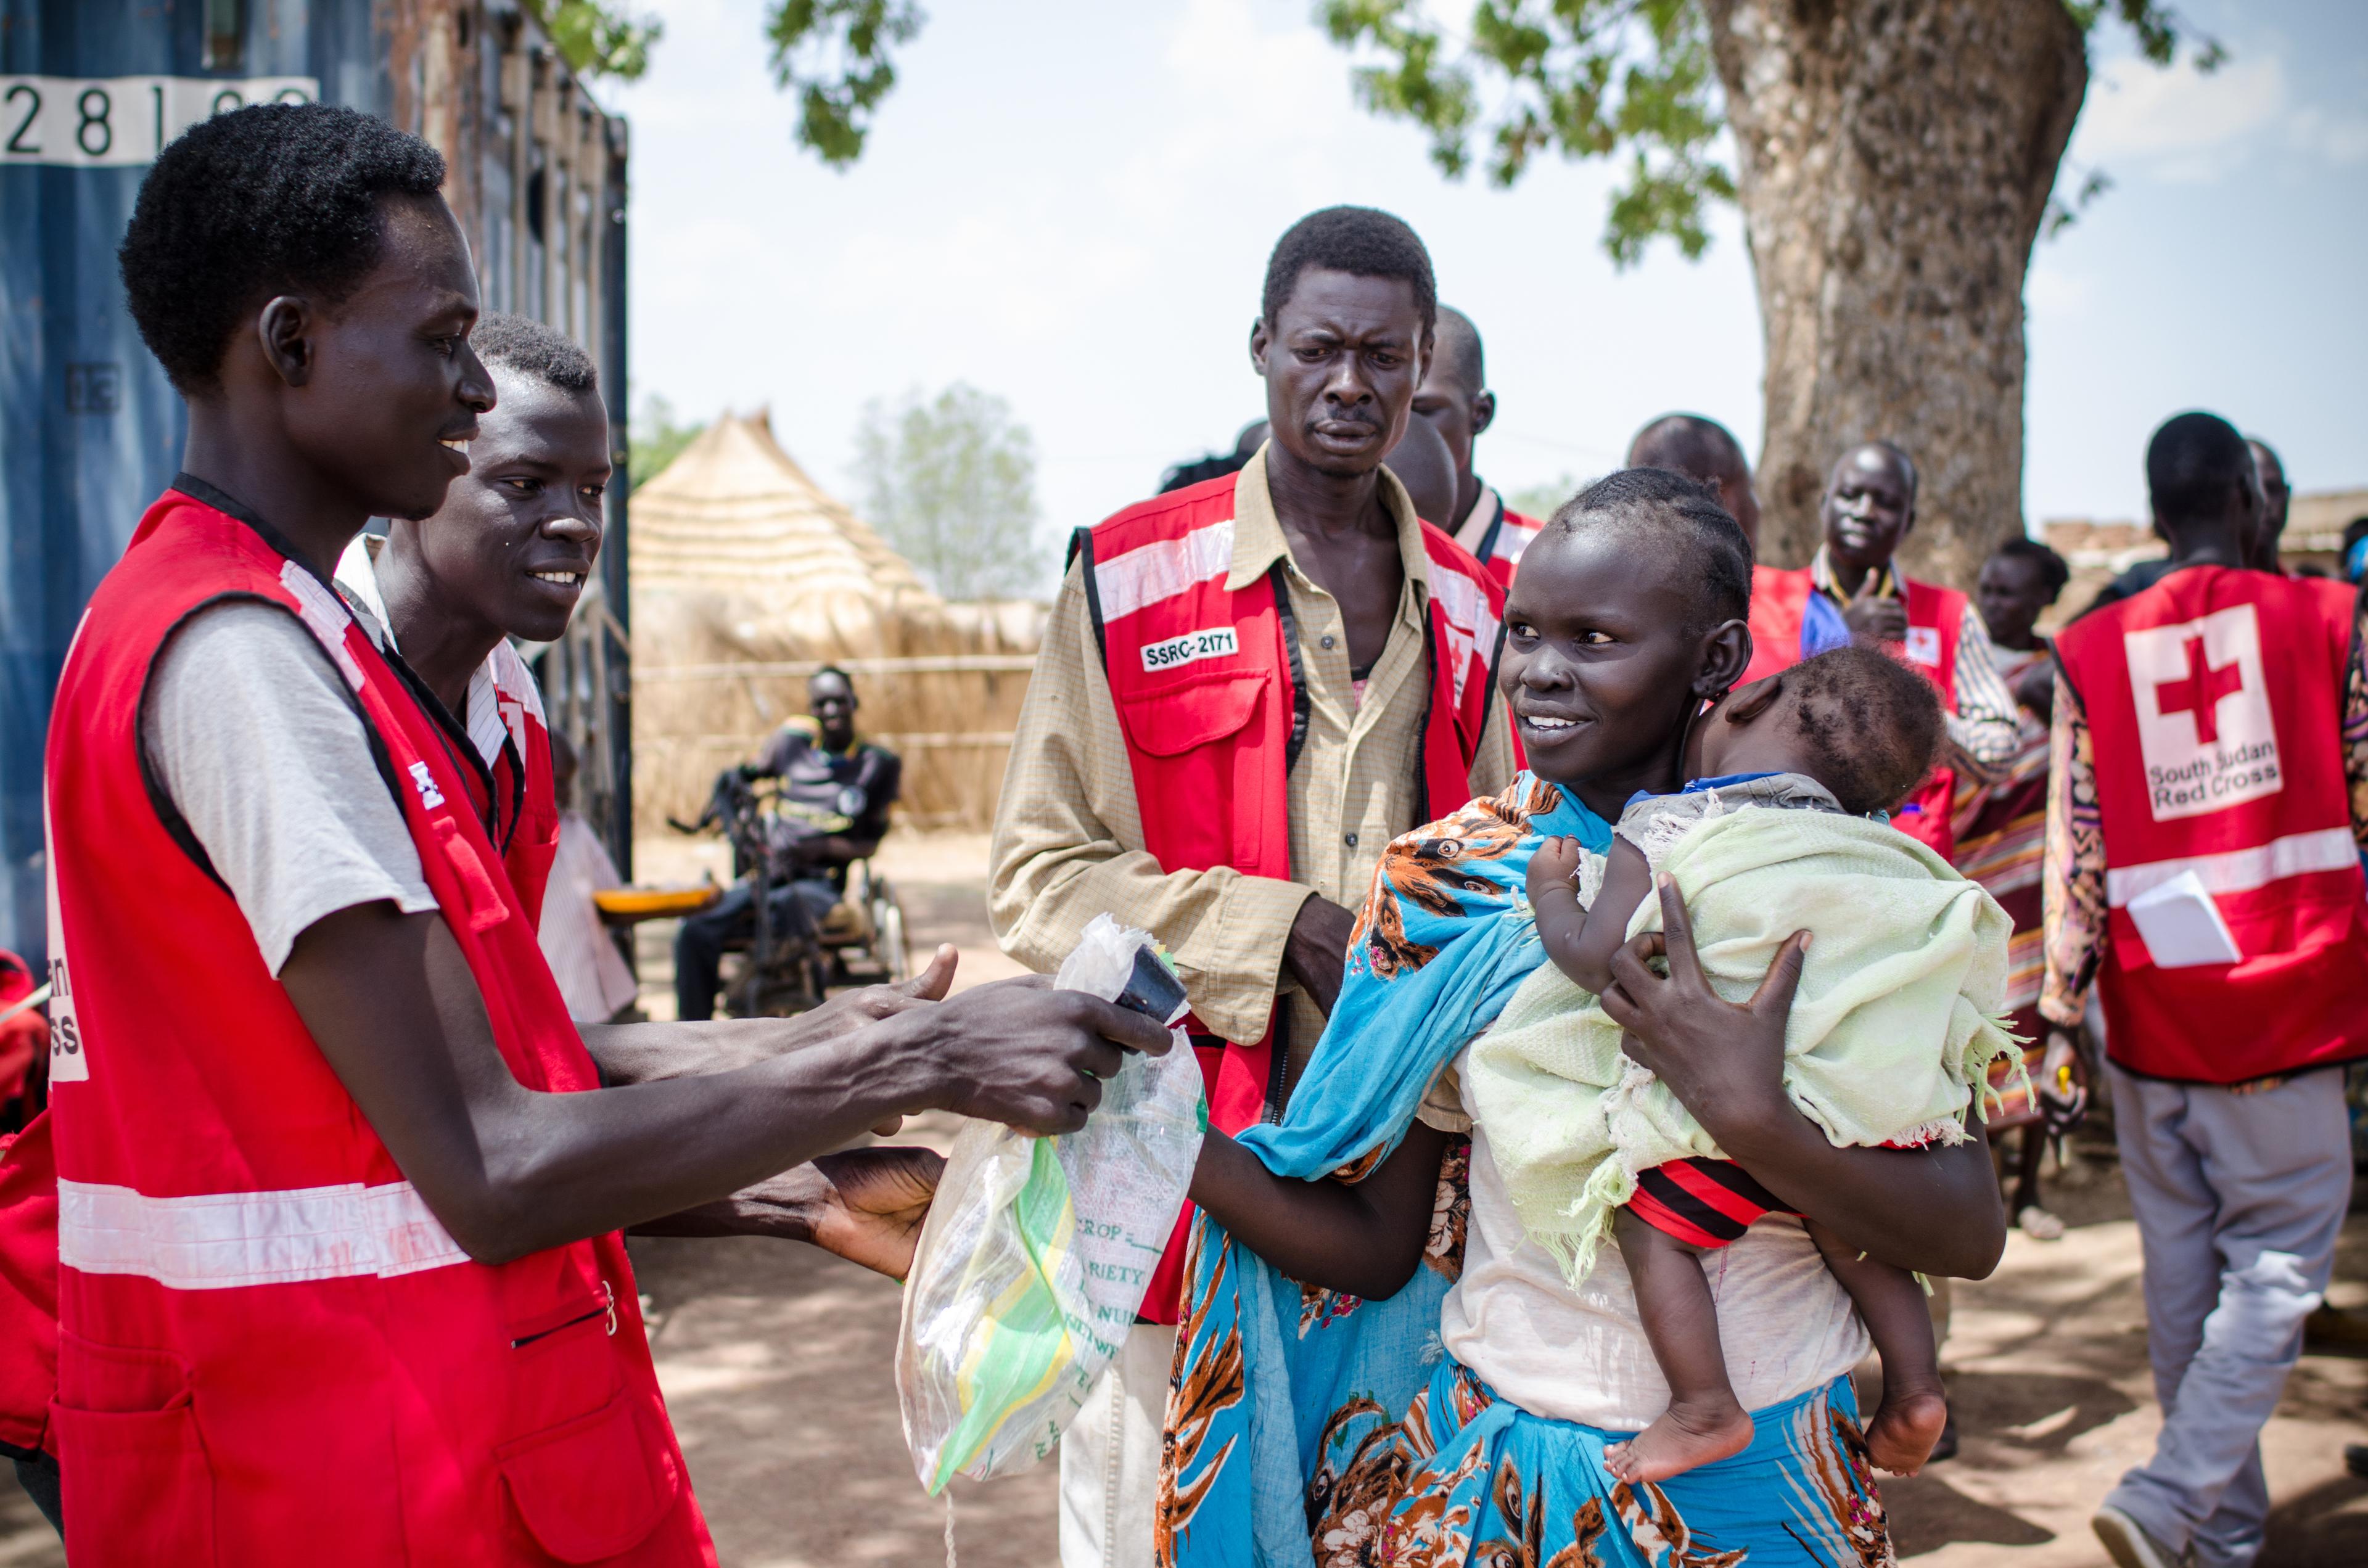 Una donna riceve sementi e attrezzi agricoli in un punto di distribuzione a Panemeth, in Sud Sudan. Porta in braccio un bambino piccolo.